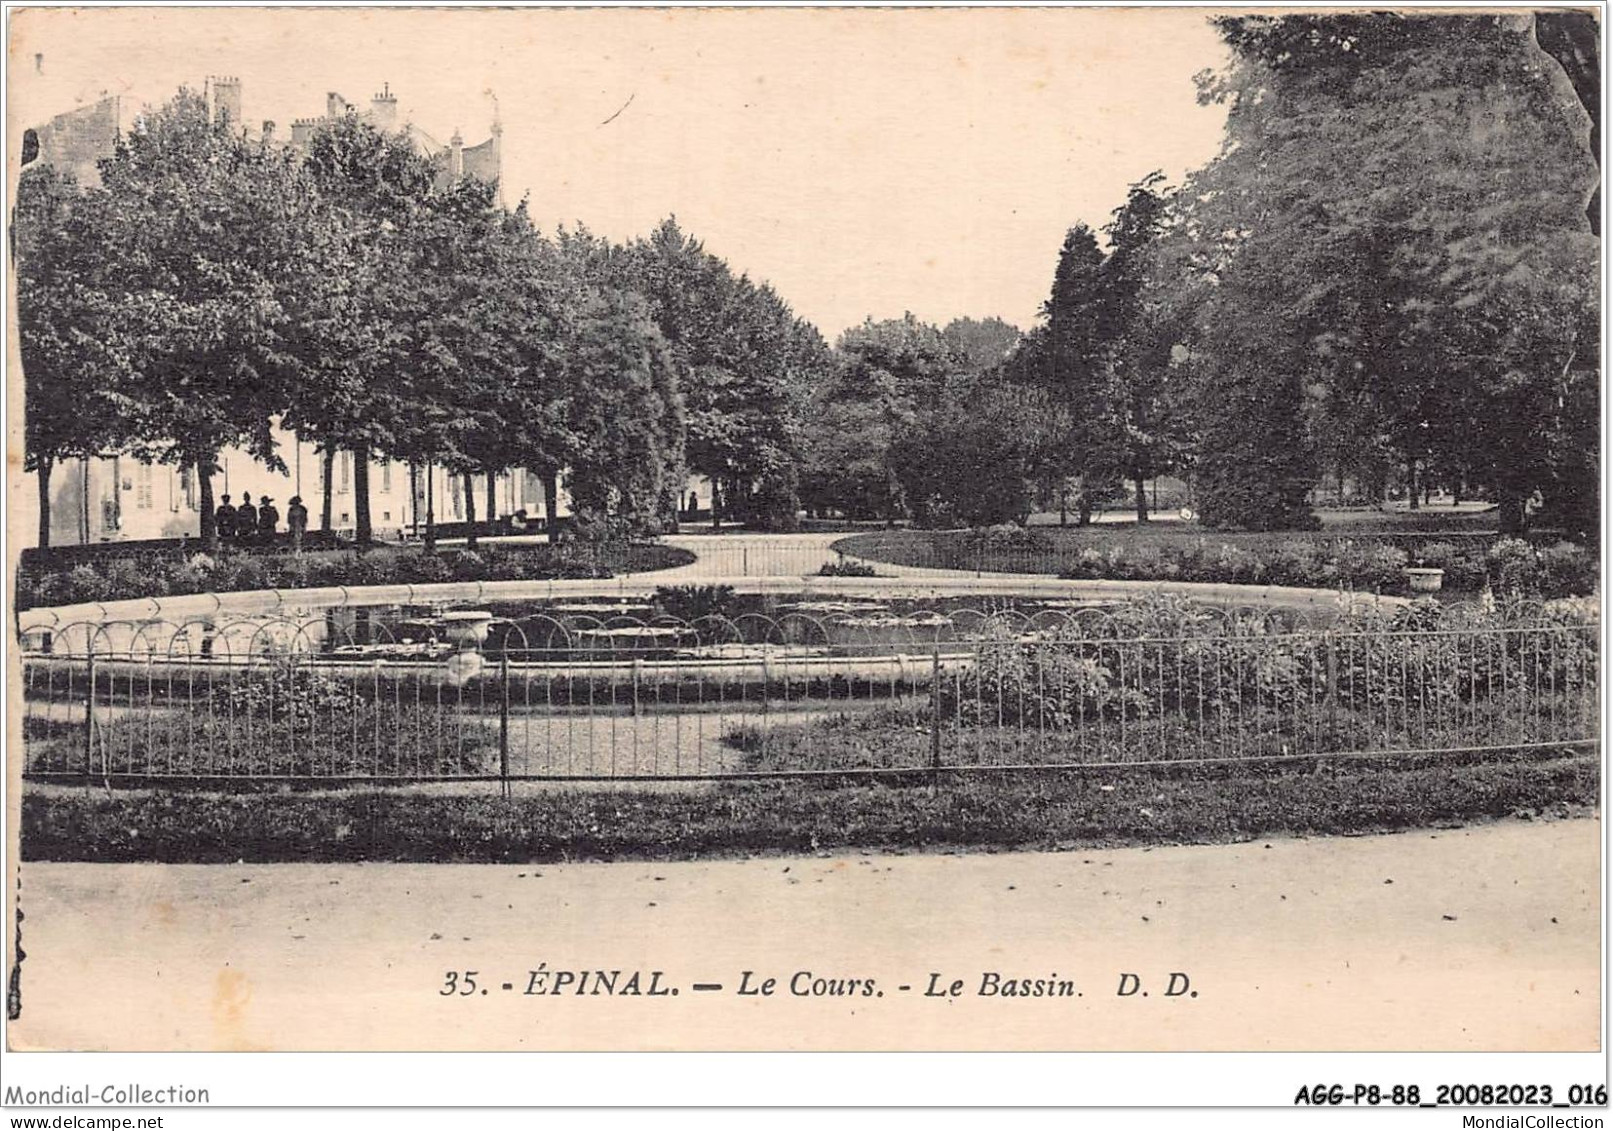 AGGP8-88-0625 - EPINAL - Le Cours - Le Bassin - Epinal